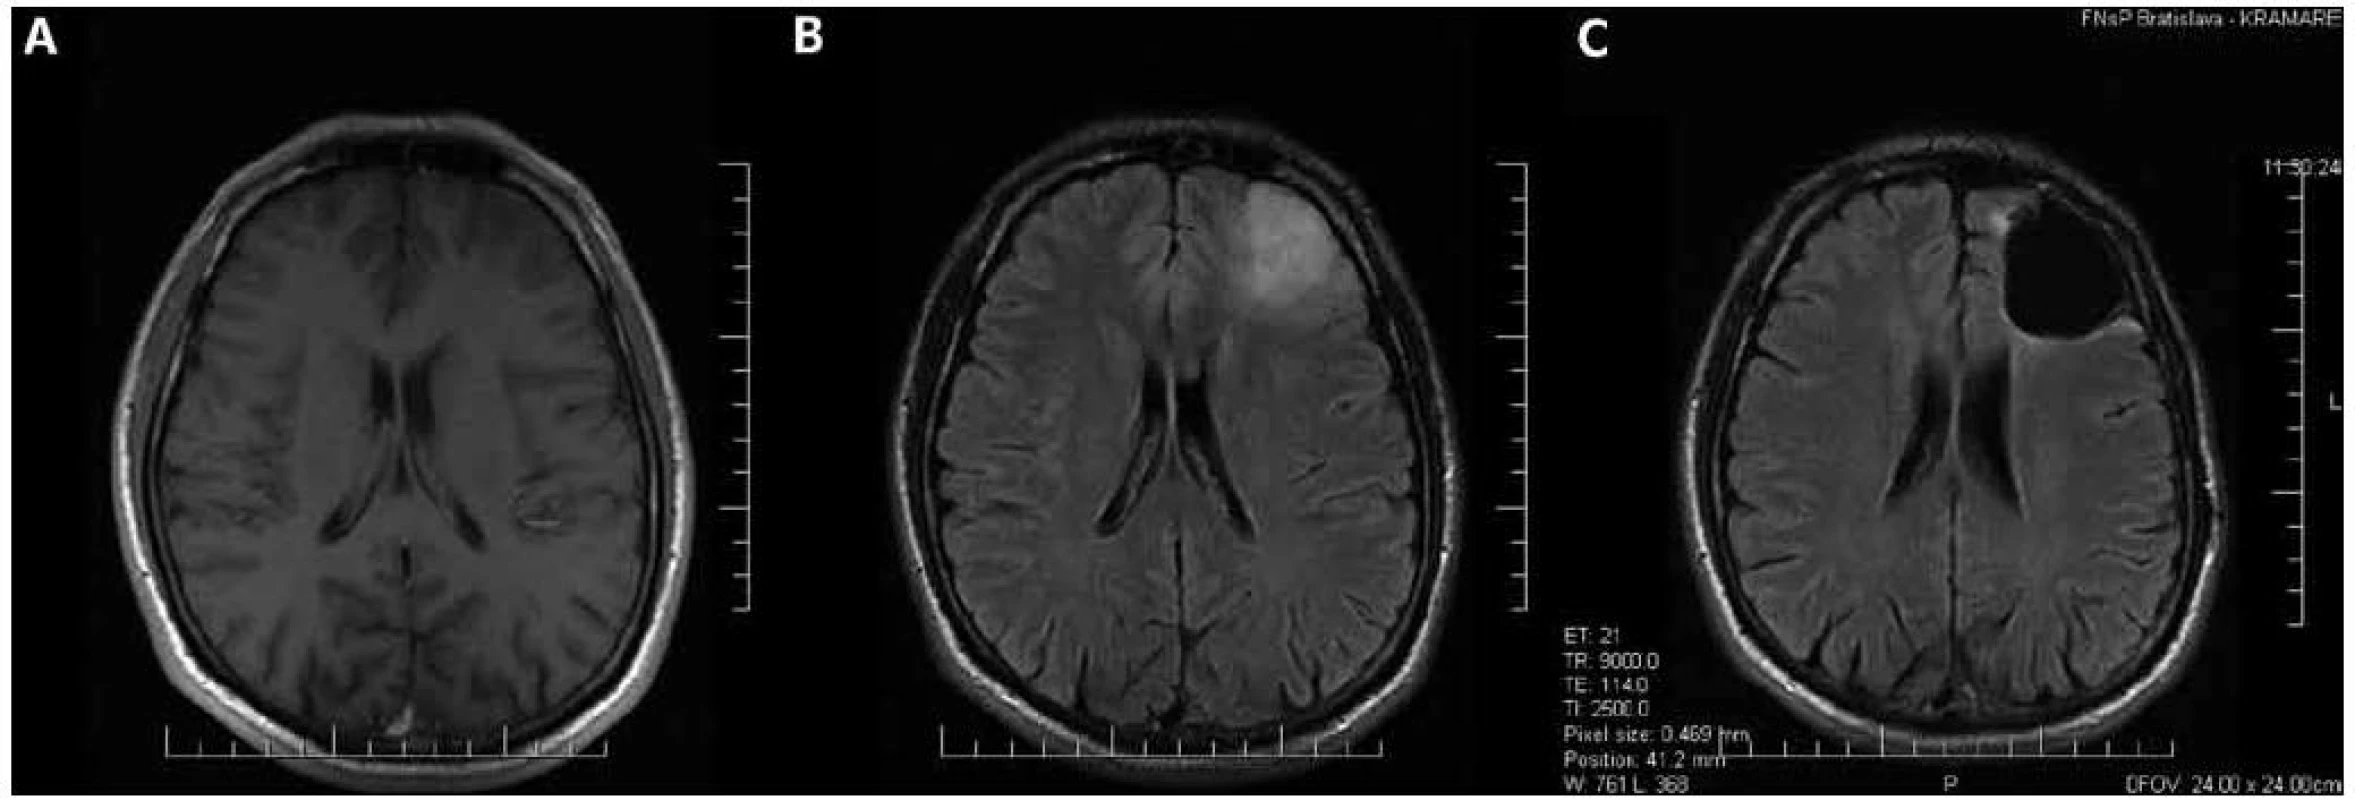 Oligodendroglióm druhého stupňa malignity v ľavom čelovom laloku.
Predoperačné MR v T1 (a) a FLAIR (b) sekvencii; nádorom infiltrovaný parenchým mozgu sa v T1 sekvencii takmer nezobrazil. c) Stav po radikálnej resekcii nádoru zobrazený vo FLAIR sekvencii; tenký hyperintenzívny lem na okraji resekčnej dutiny je pooperačná glióza, nachádza sa mimo miest, kde bolo predoperačne lokalizované hyperintenzívne gliómové tkanivo.